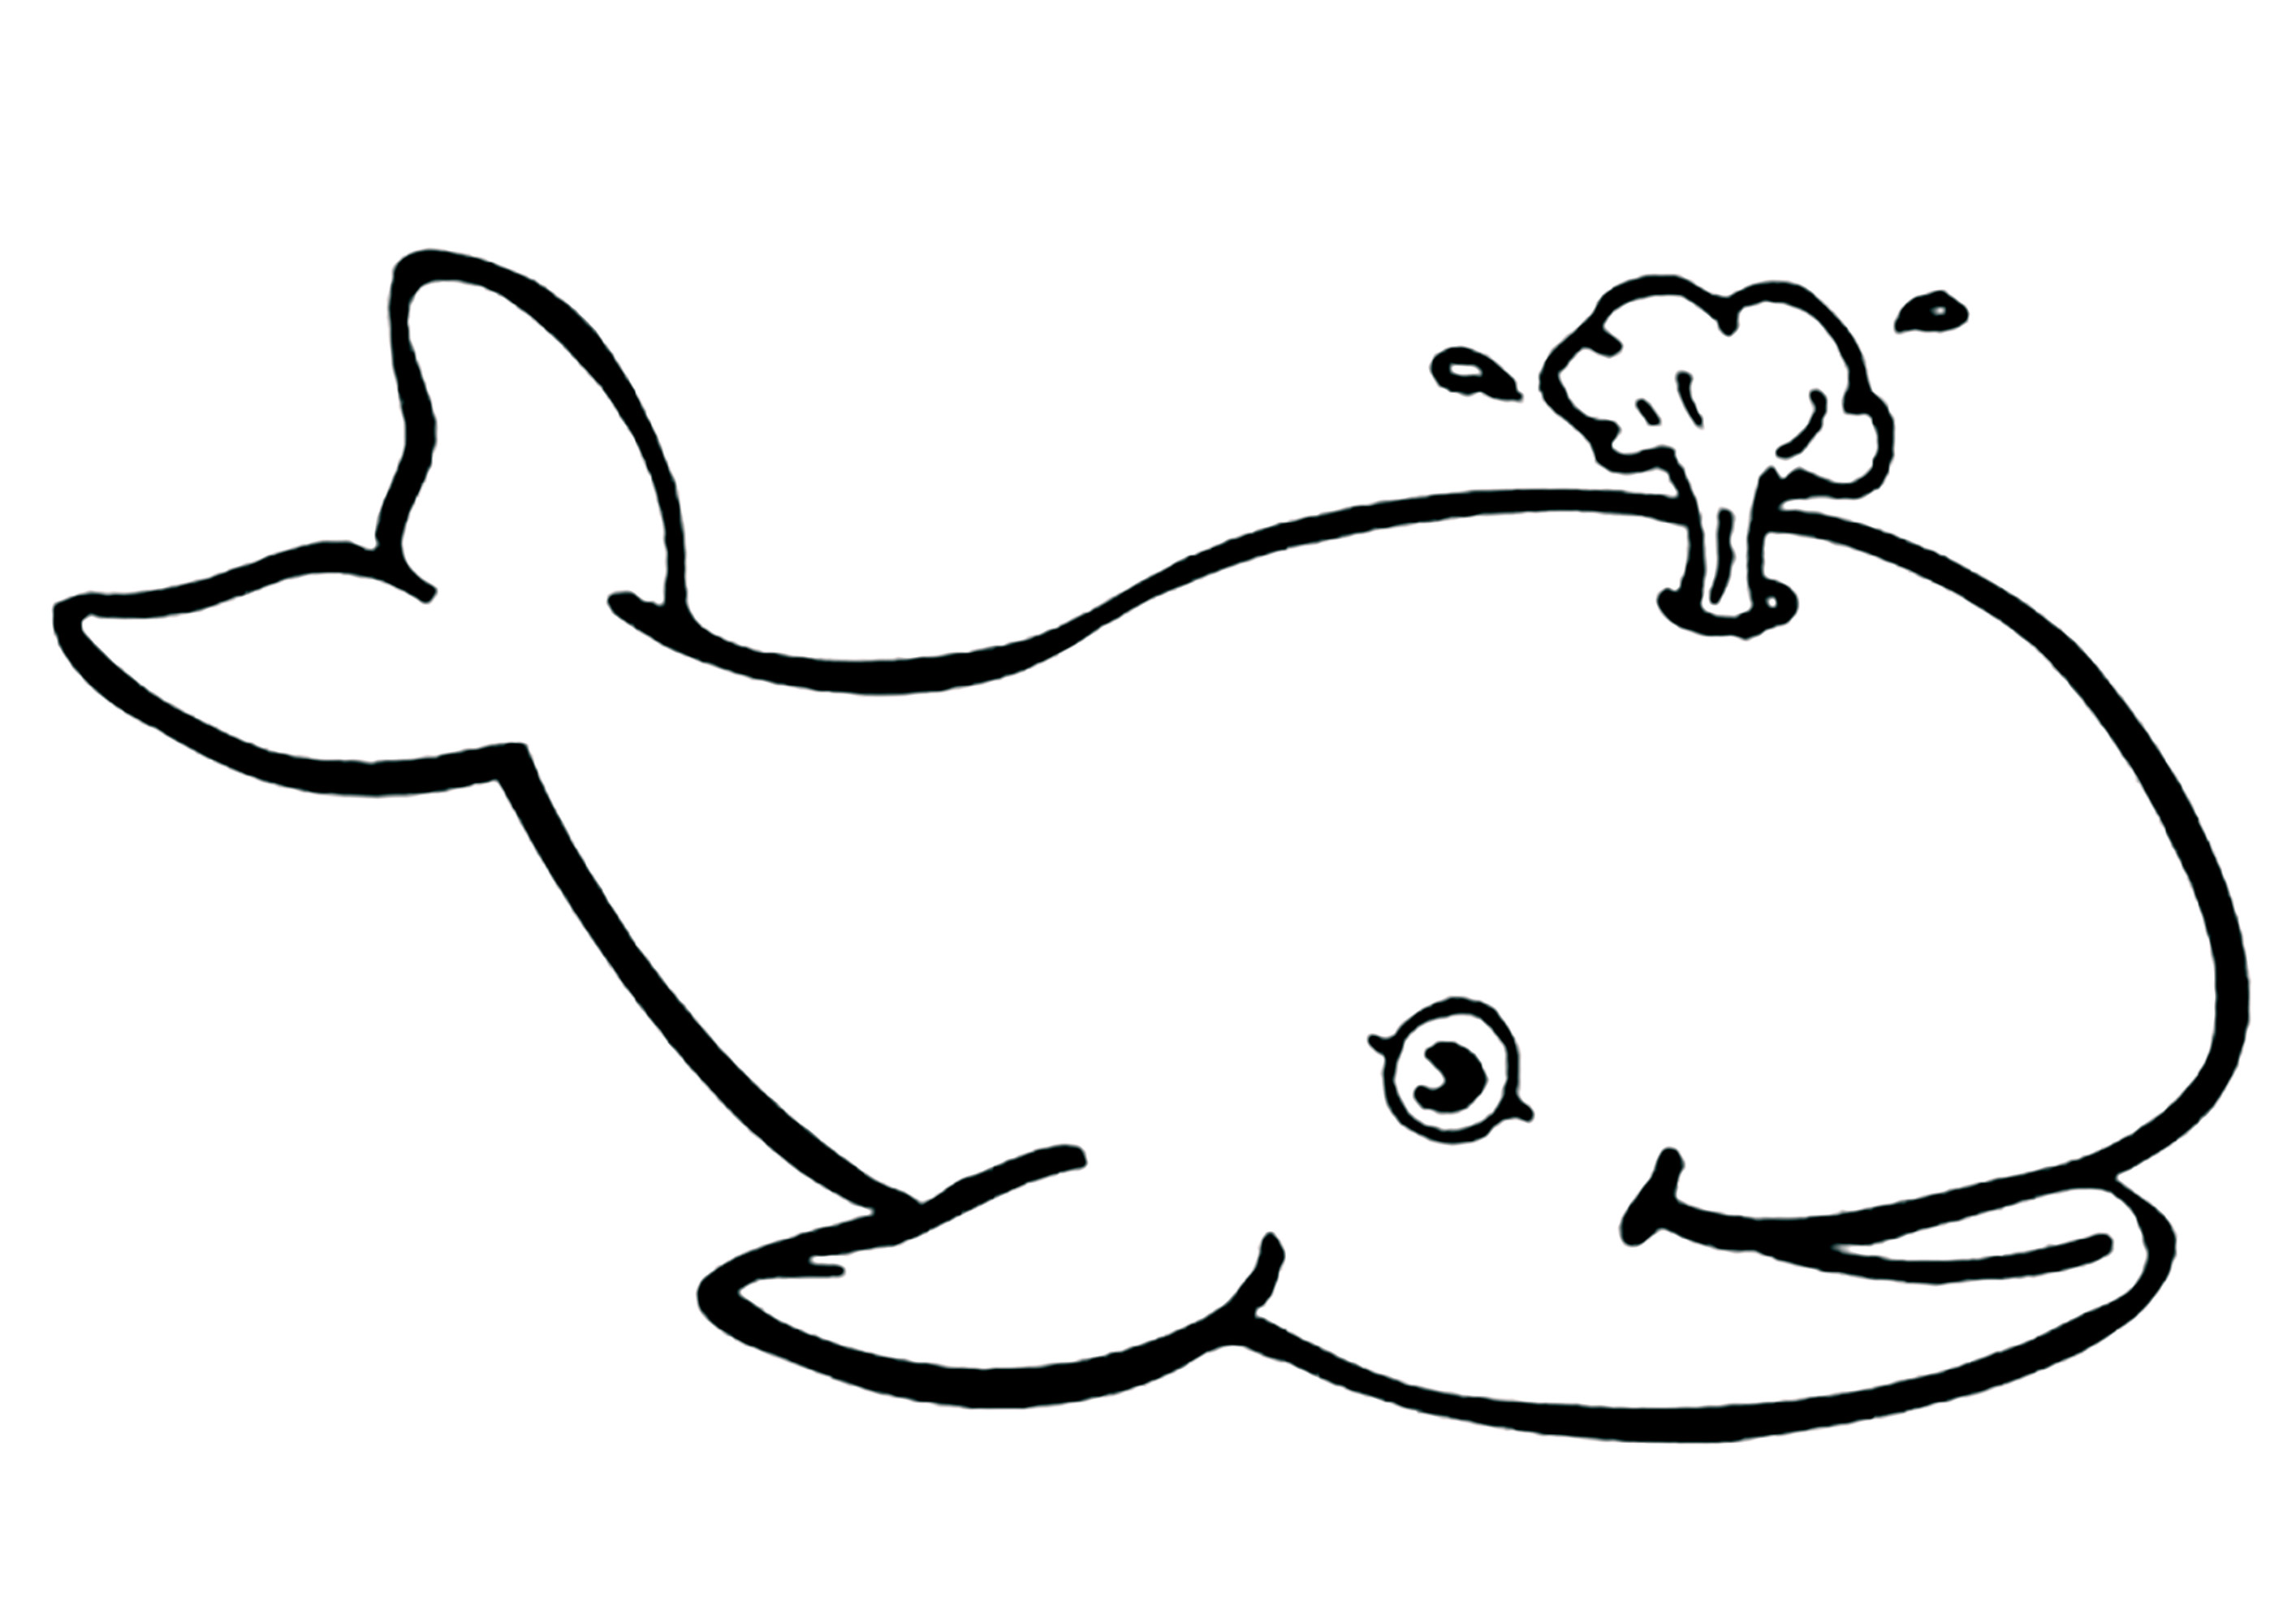 Coloriage très simple d'une belle baleine évacuant de l'eau. Les baleines font ces jets d'eau quand elles soufflent l'air qui est dans leurs poumons quand elles remontent à la surface, pour reprendre leur respiration.